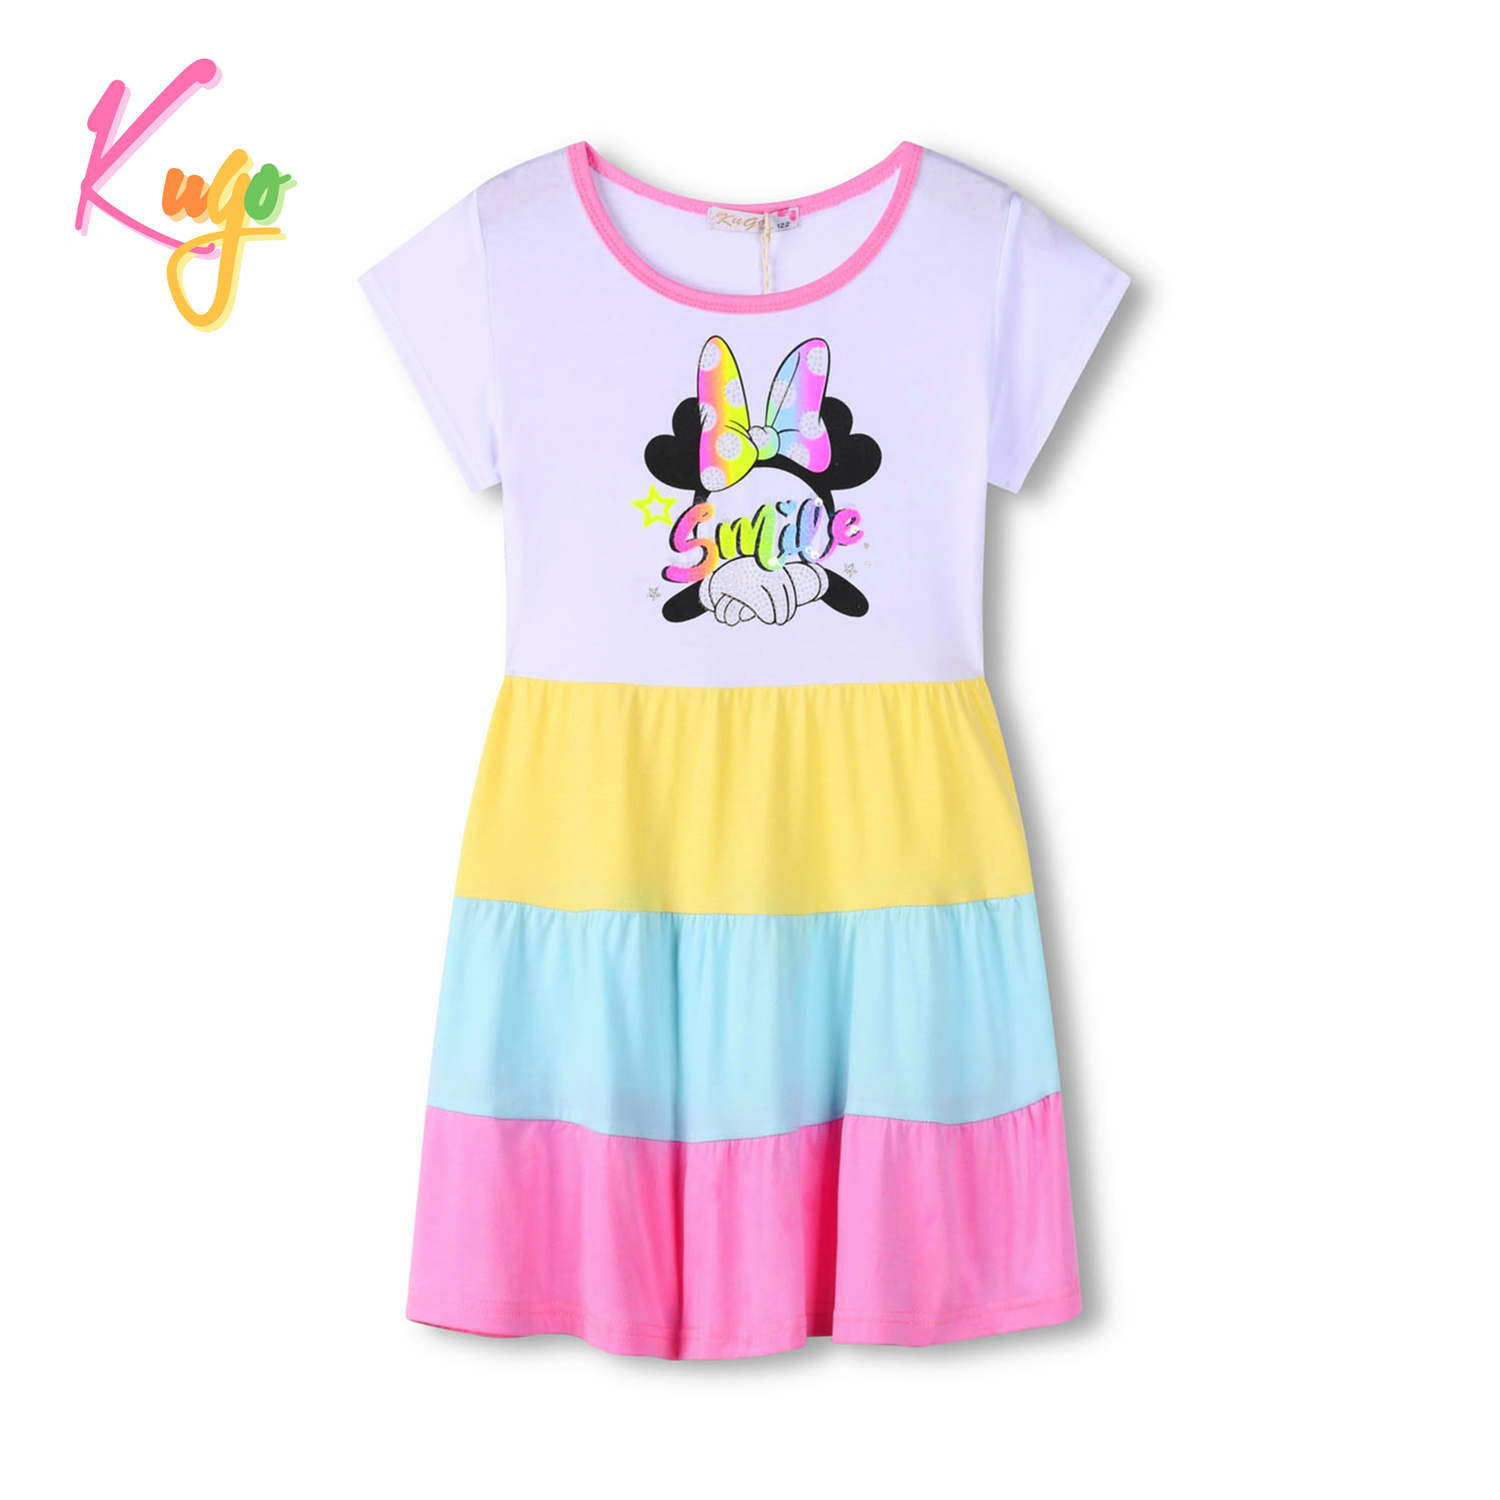 Dívčí šaty - KUGO MS1721, růžová Barva: Růžová, Velikost: 104